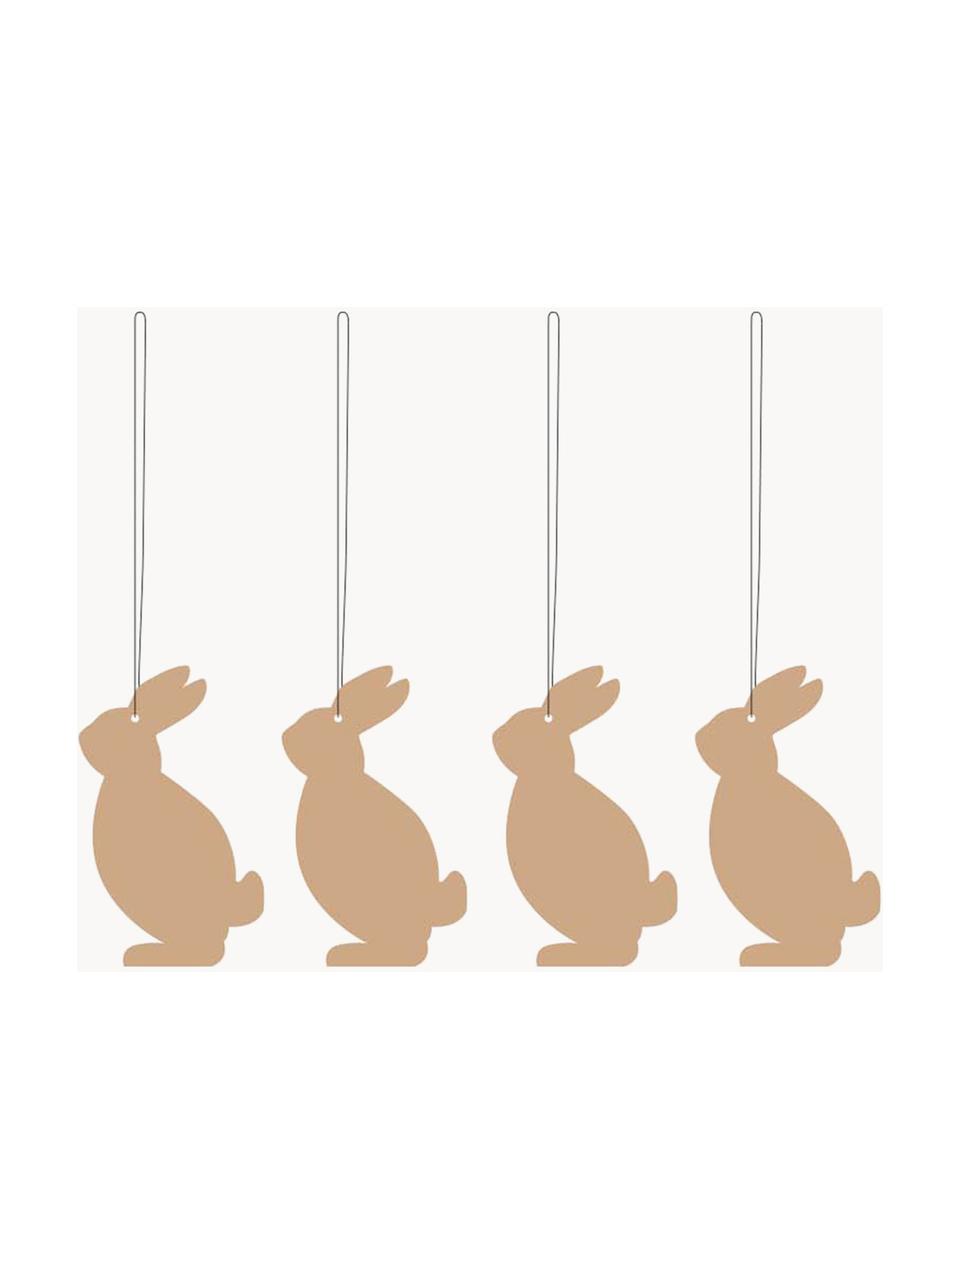 Oster-Dekoanhänger Hare, 4 Stück, Edelstahl, pulverbeschichtet, Nougat, B 4 x H 6 cm